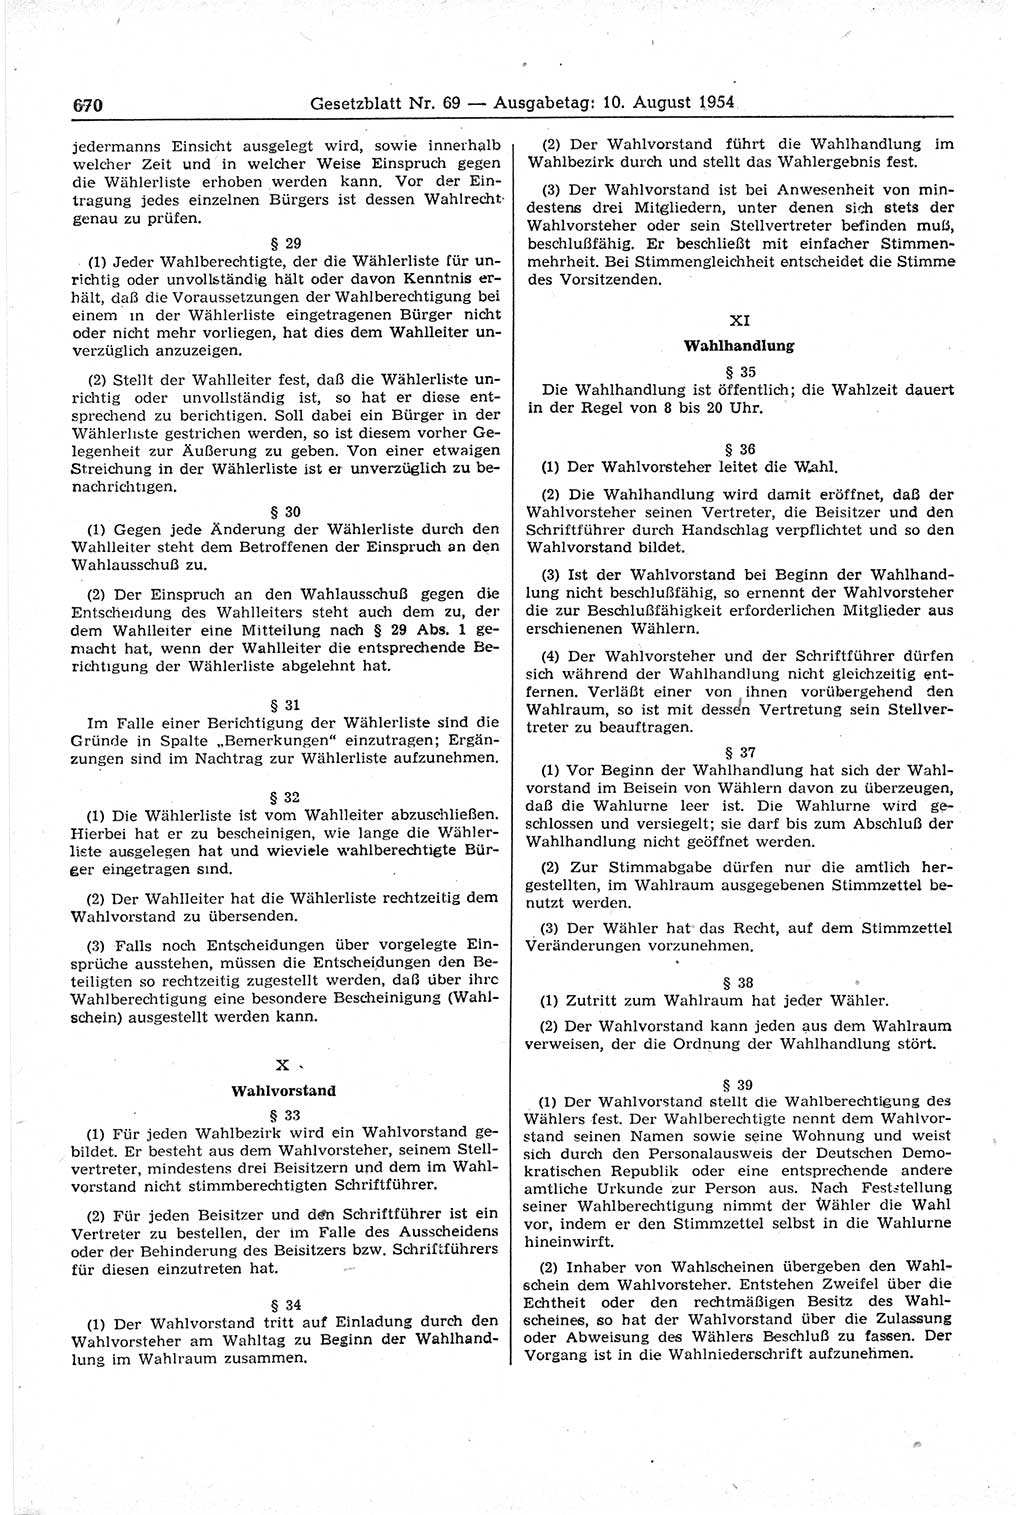 Gesetzblatt (GBl.) der Deutschen Demokratischen Republik (DDR) 1954, Seite 670 (GBl. DDR 1954, S. 670)